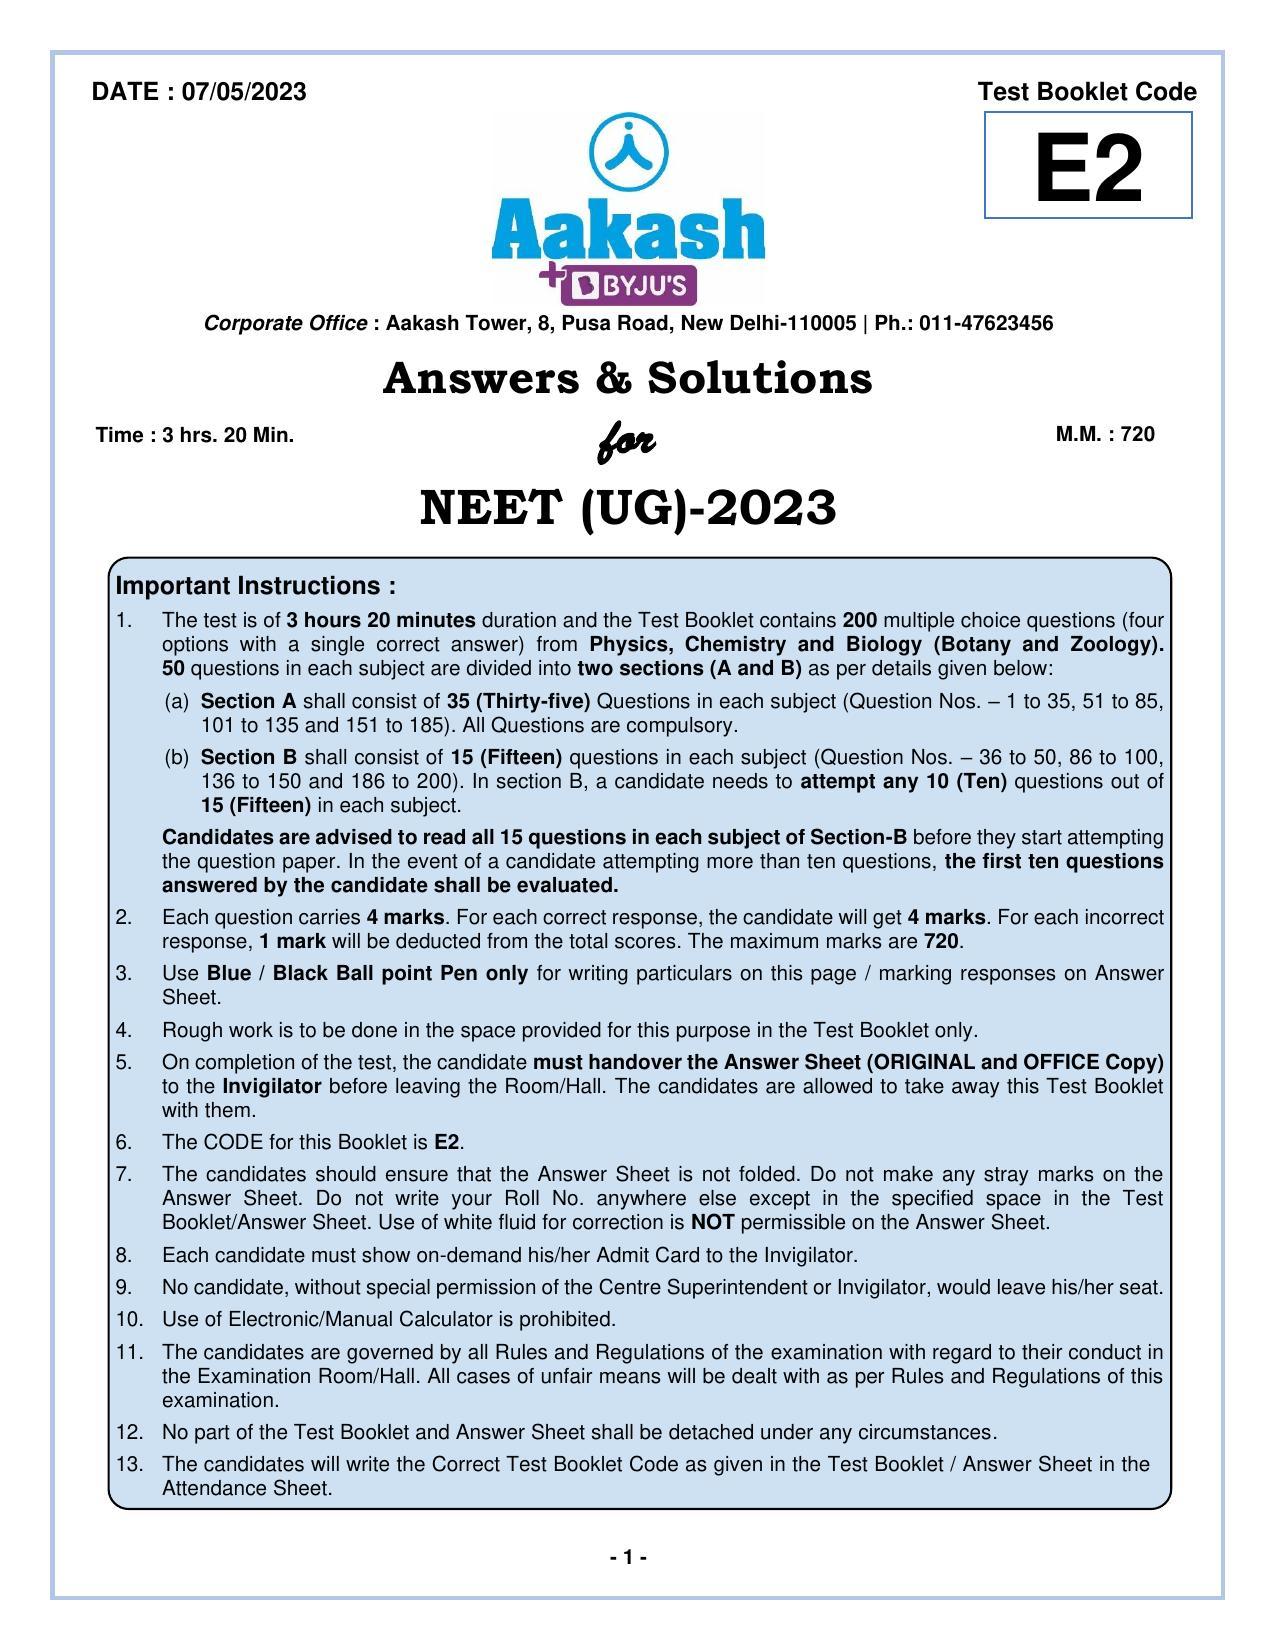 NEET 2023 Question Paper E2 - Page 1